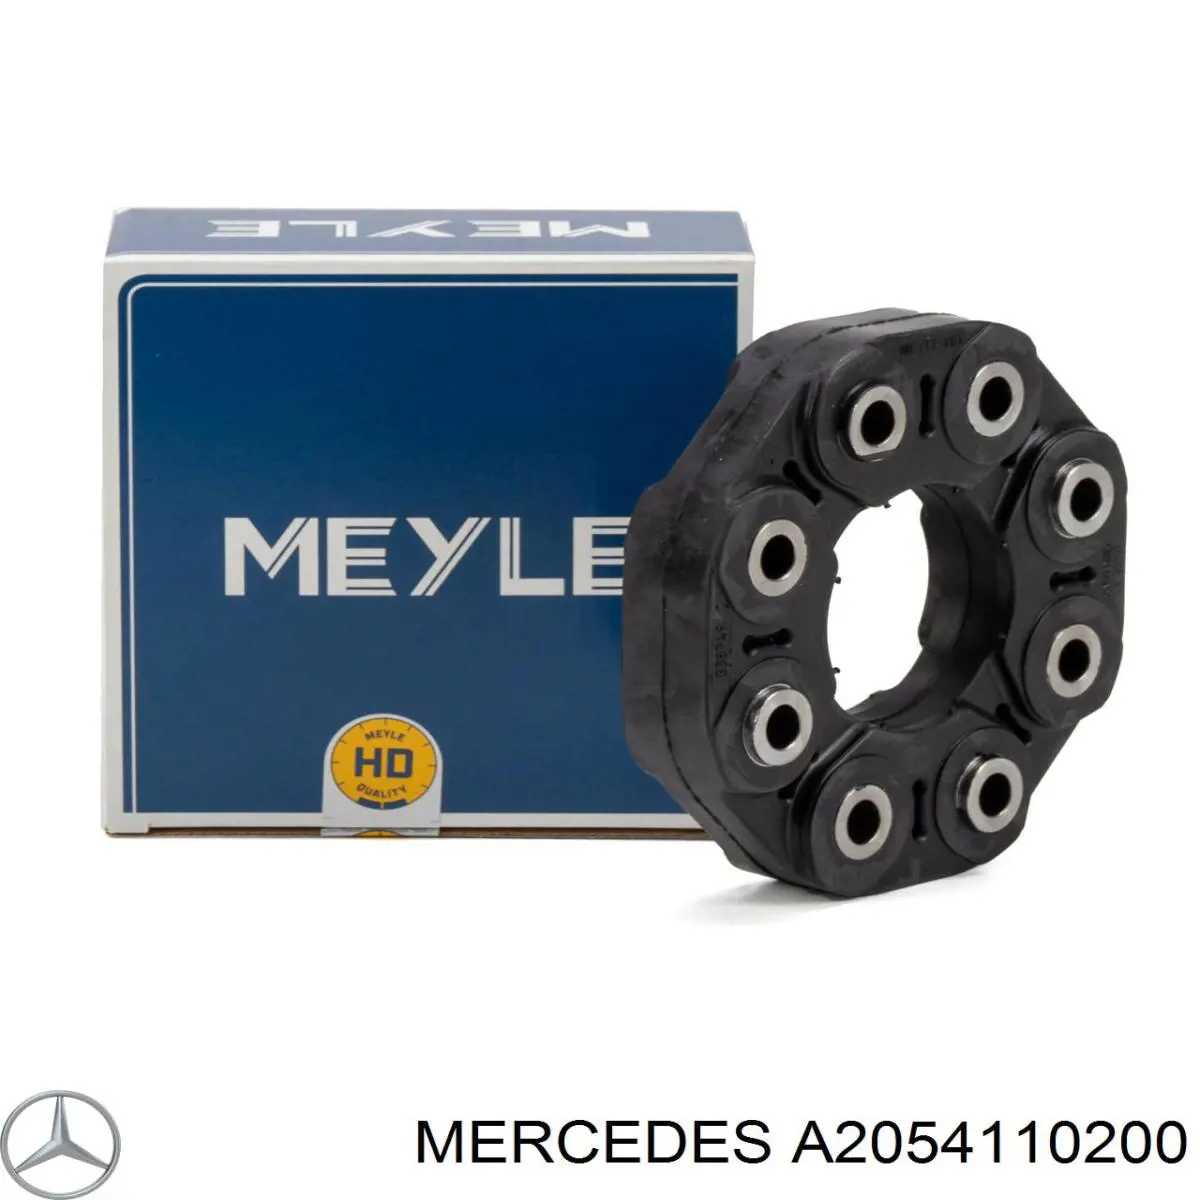 Acoplamiento elástico del cardán para Mercedes E (W213)